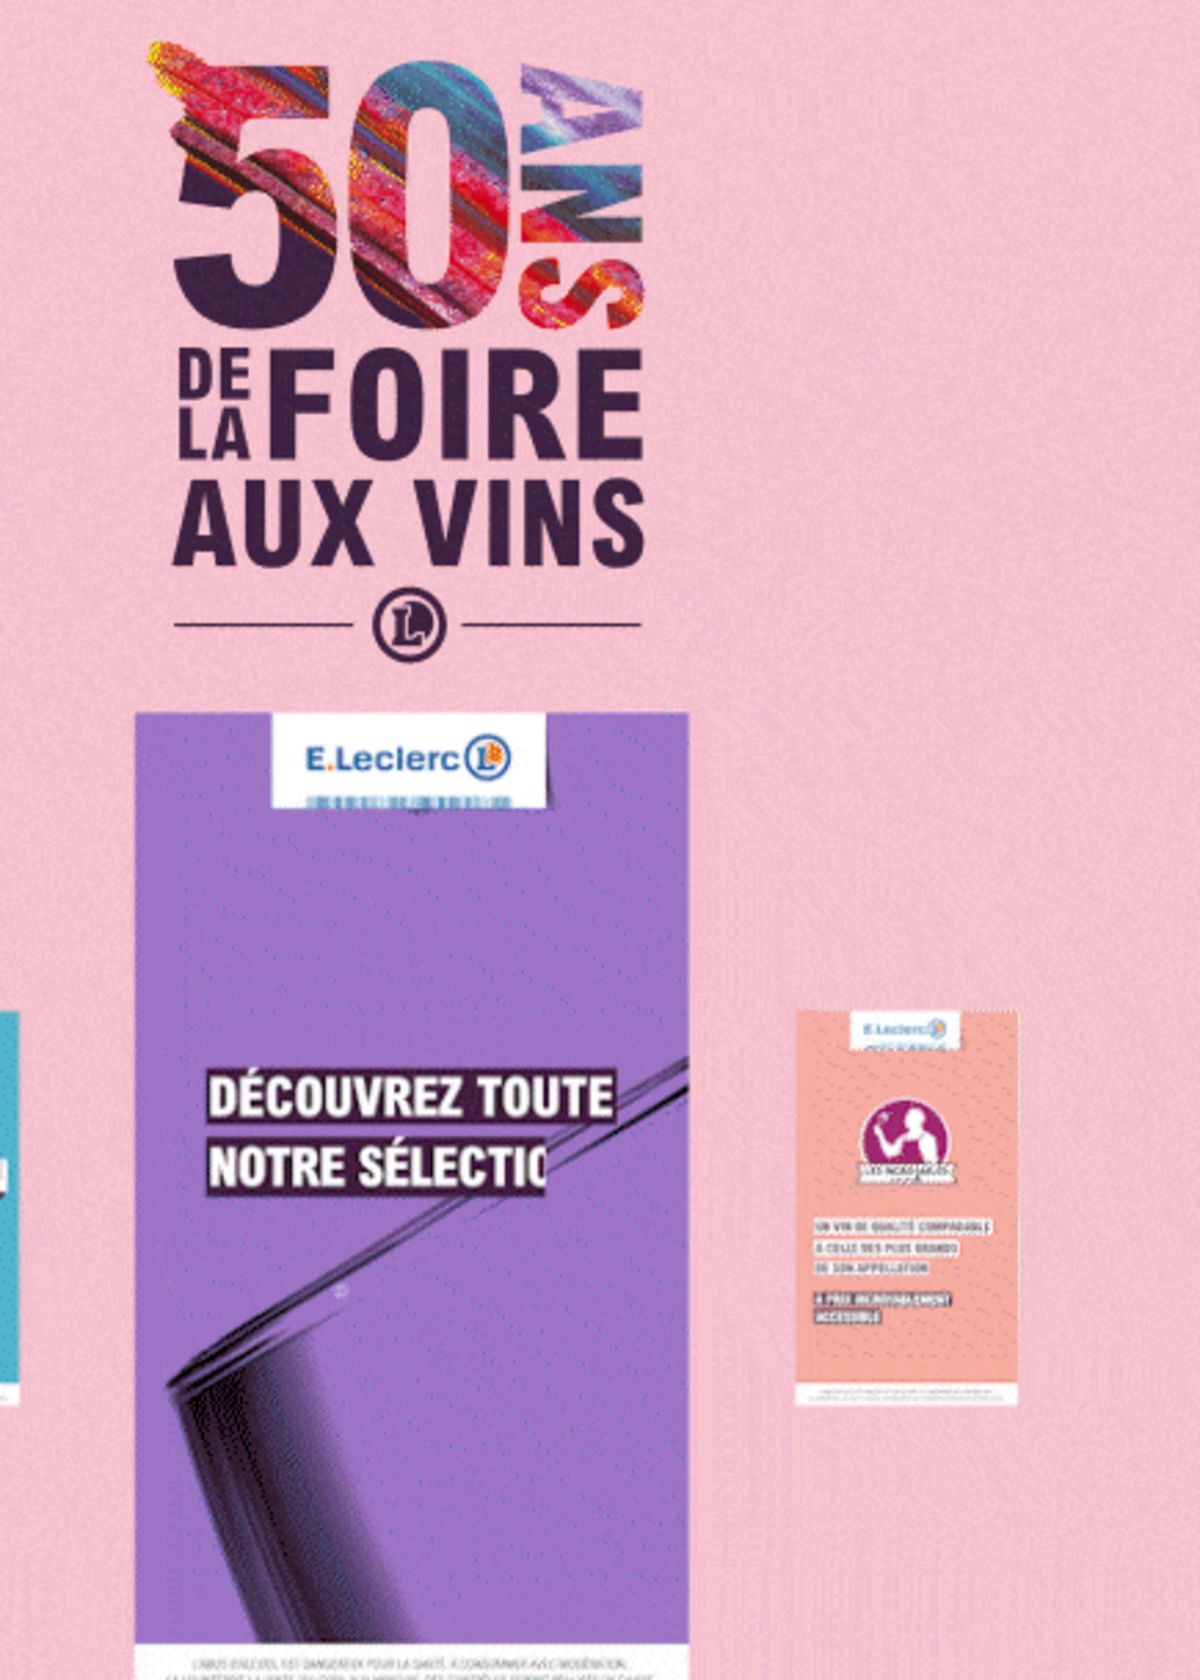 Catalogue Foire Aux Vins - Mixte, page 00376